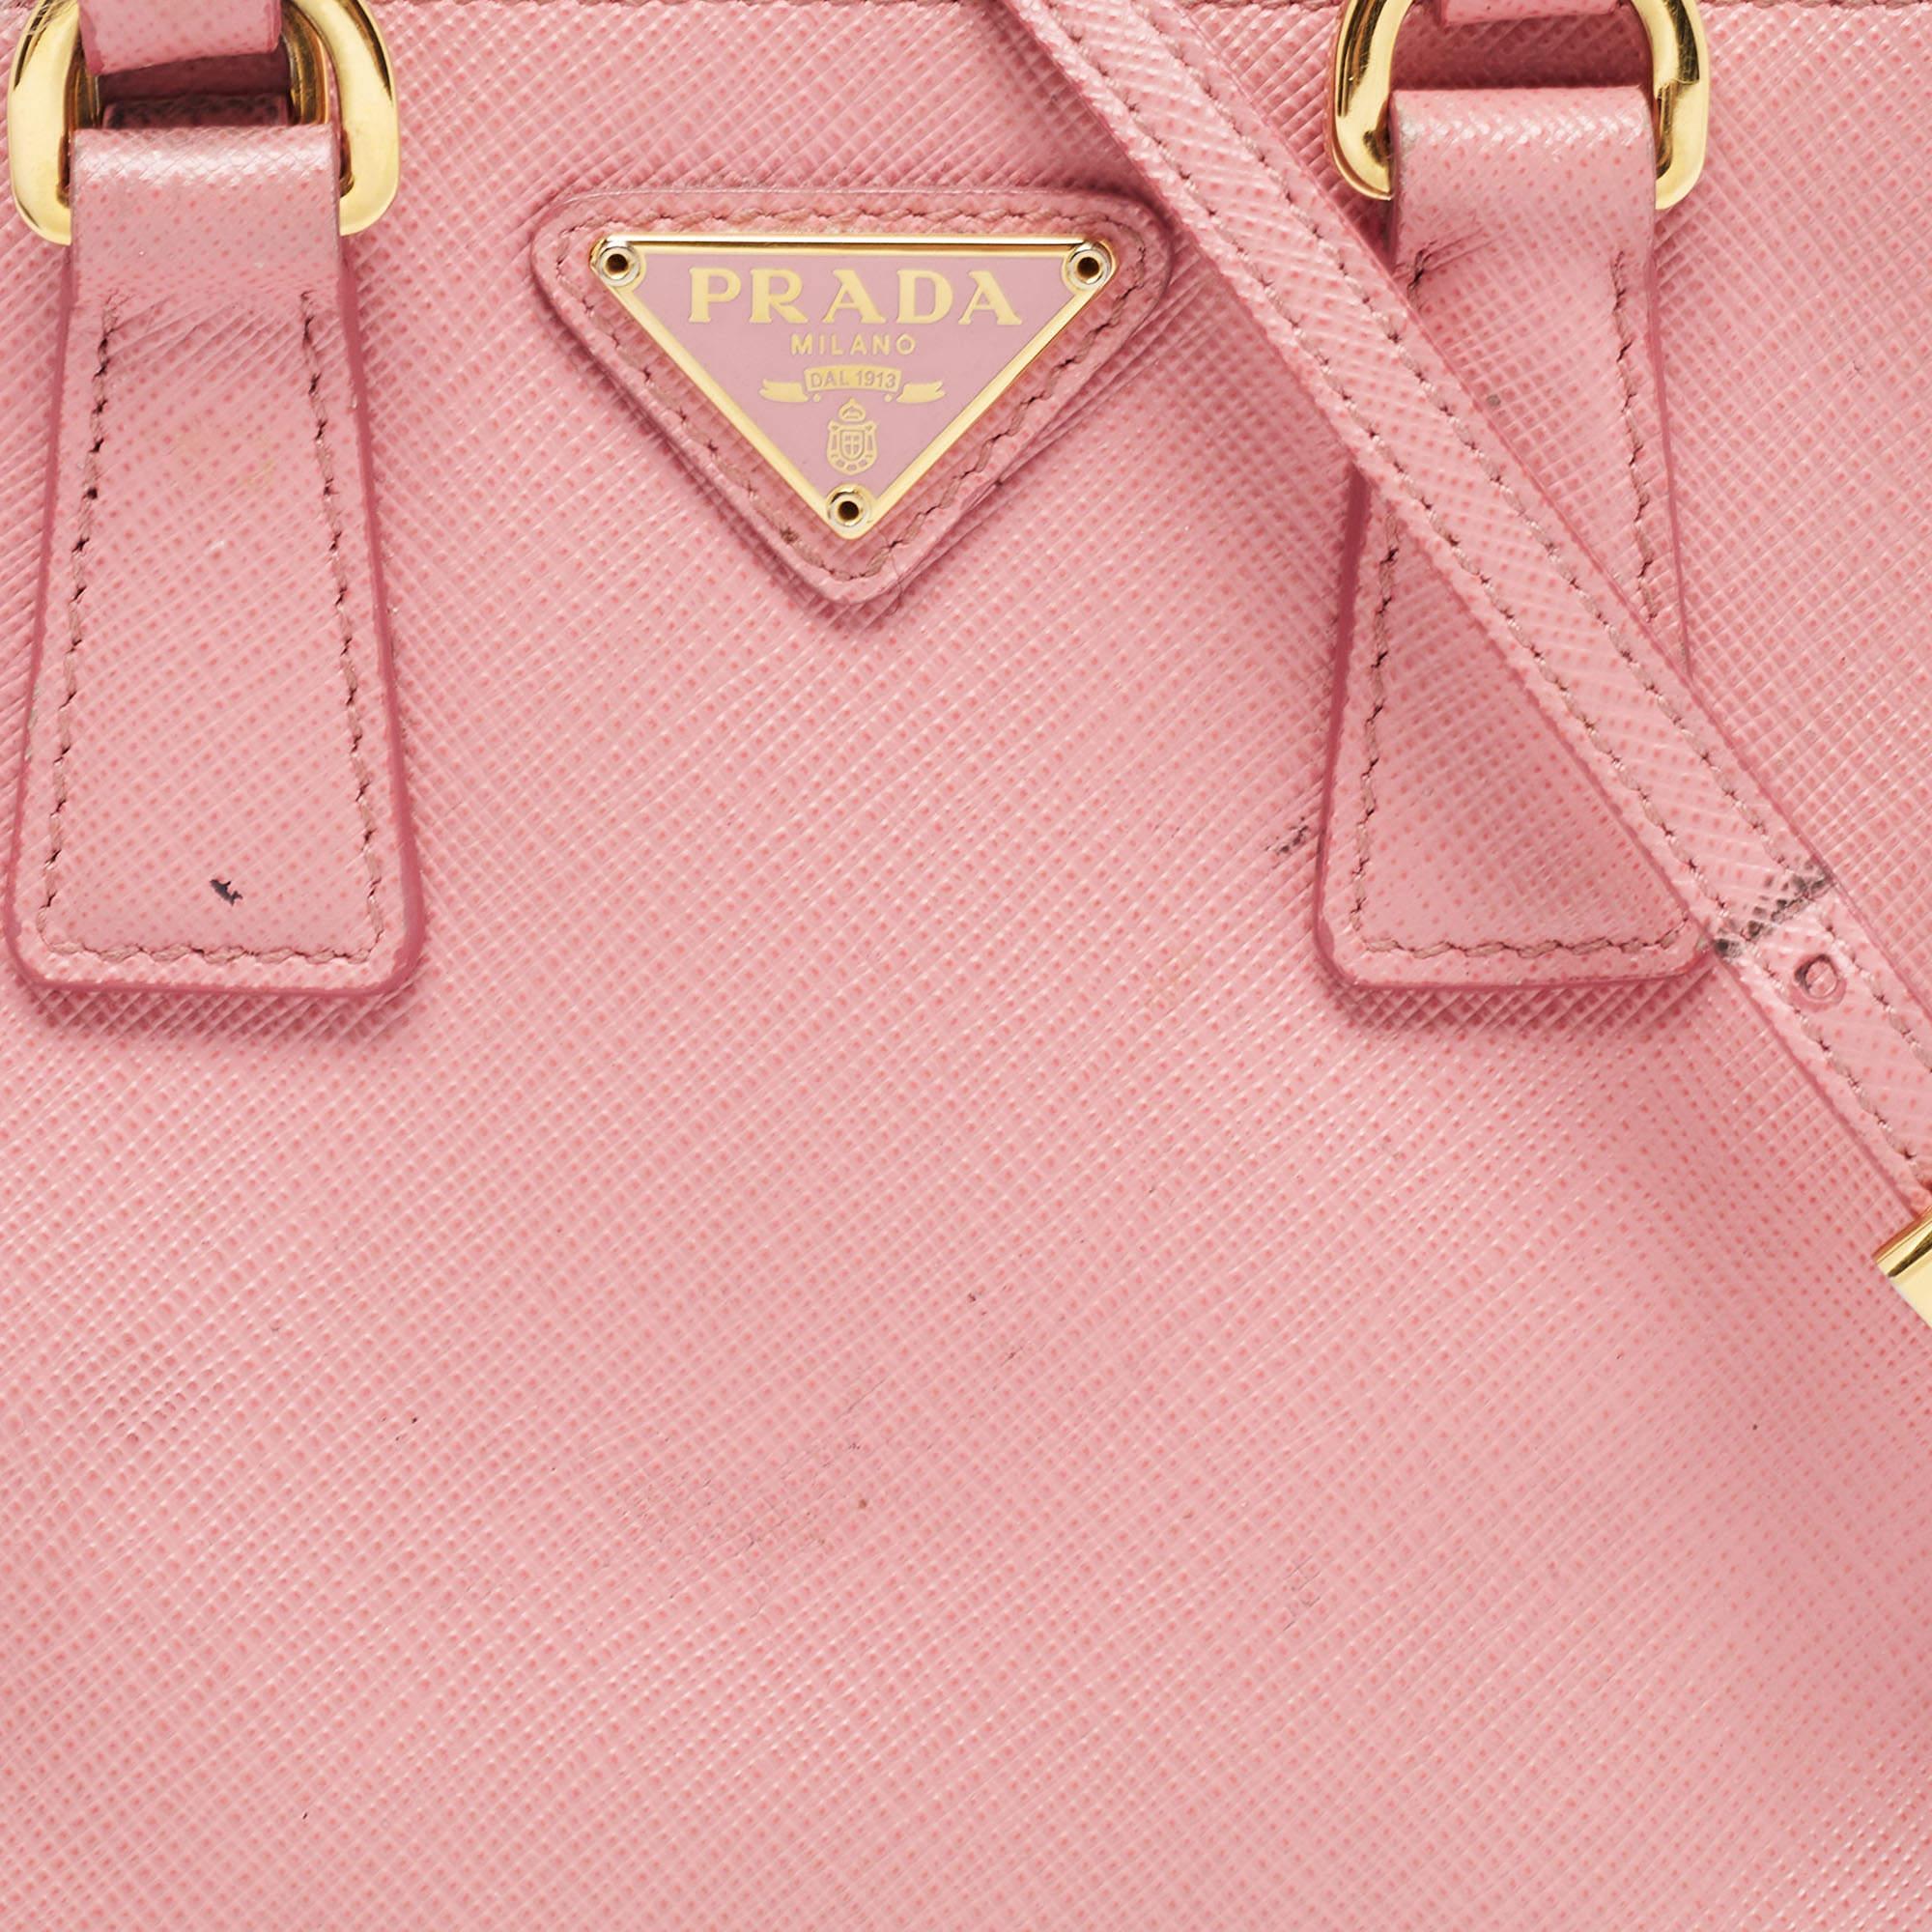 Prada Pink Saffiano Leather Mini Galleria Double Zip Tote 3